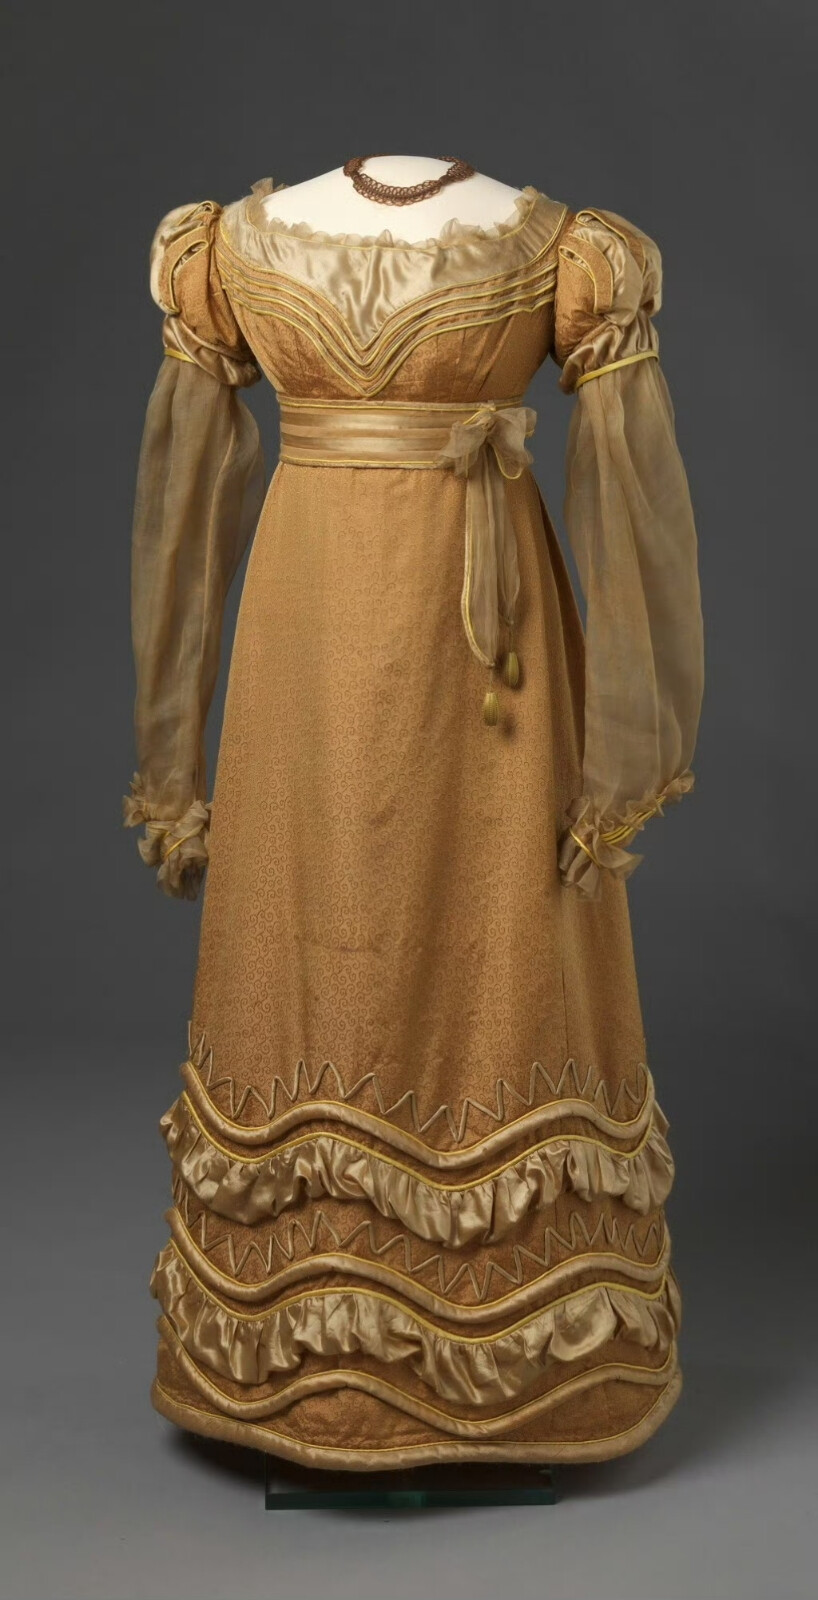 一件1825年的晚装，用金褐色漩涡花纹丝绸搭配暗金色与明黄色缎子制成，特别之处是在做成切口的泡泡袖下连着一条透明薄纱长袖，可以想象穿上身后面料质感的对比与双臂轻笼云雾中的效果。我在设计小玫瑰的衣服时就觉得这种样式的袖子应该存在于浪漫主义时期的服装中，果然这就找到了。